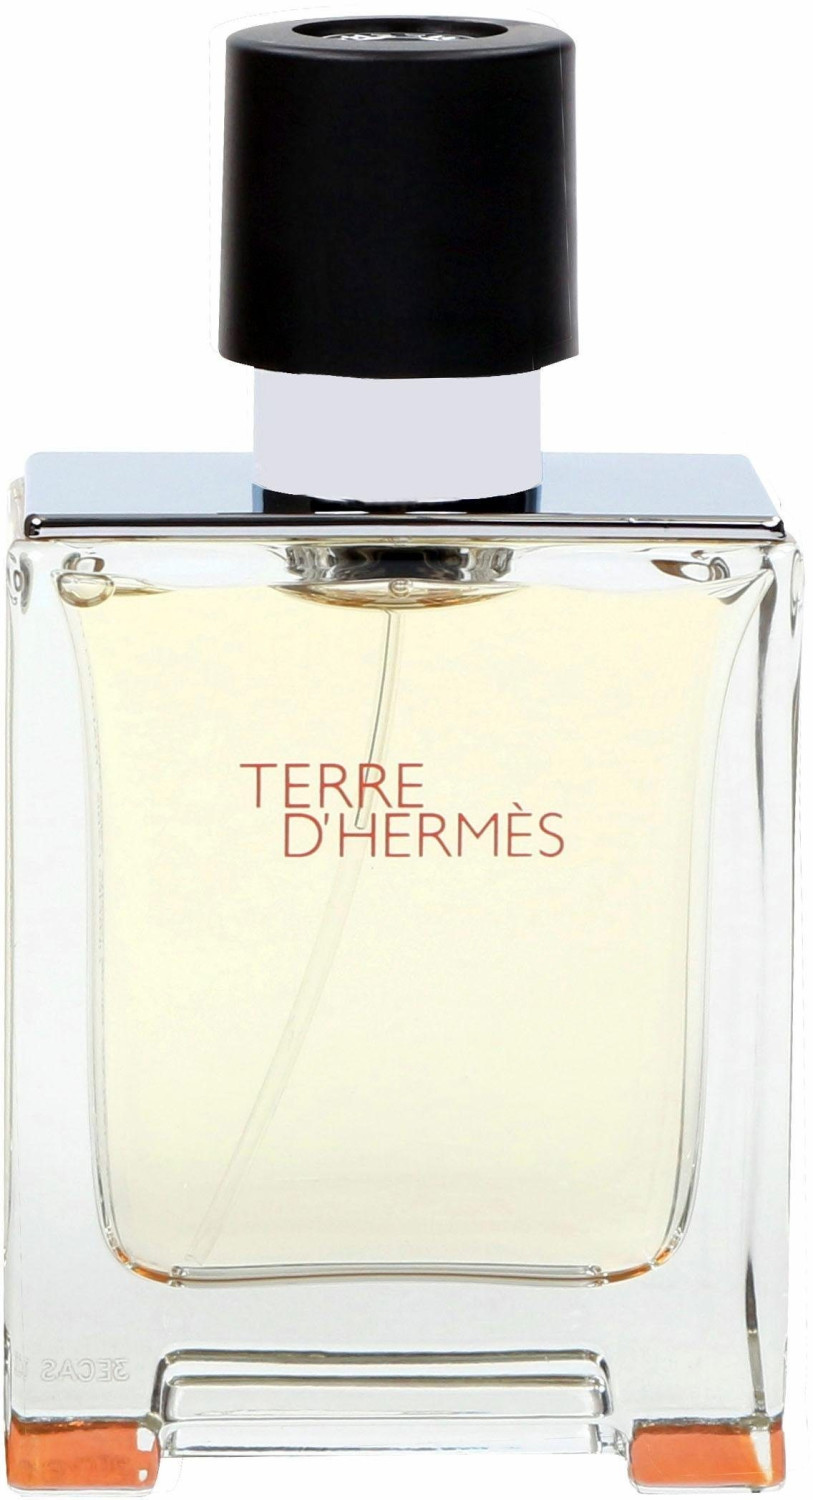 Photos - Men's Fragrance Hermes Hermès Paris Hermès Terre d'Hermès Eau de Toilette  (50ml)